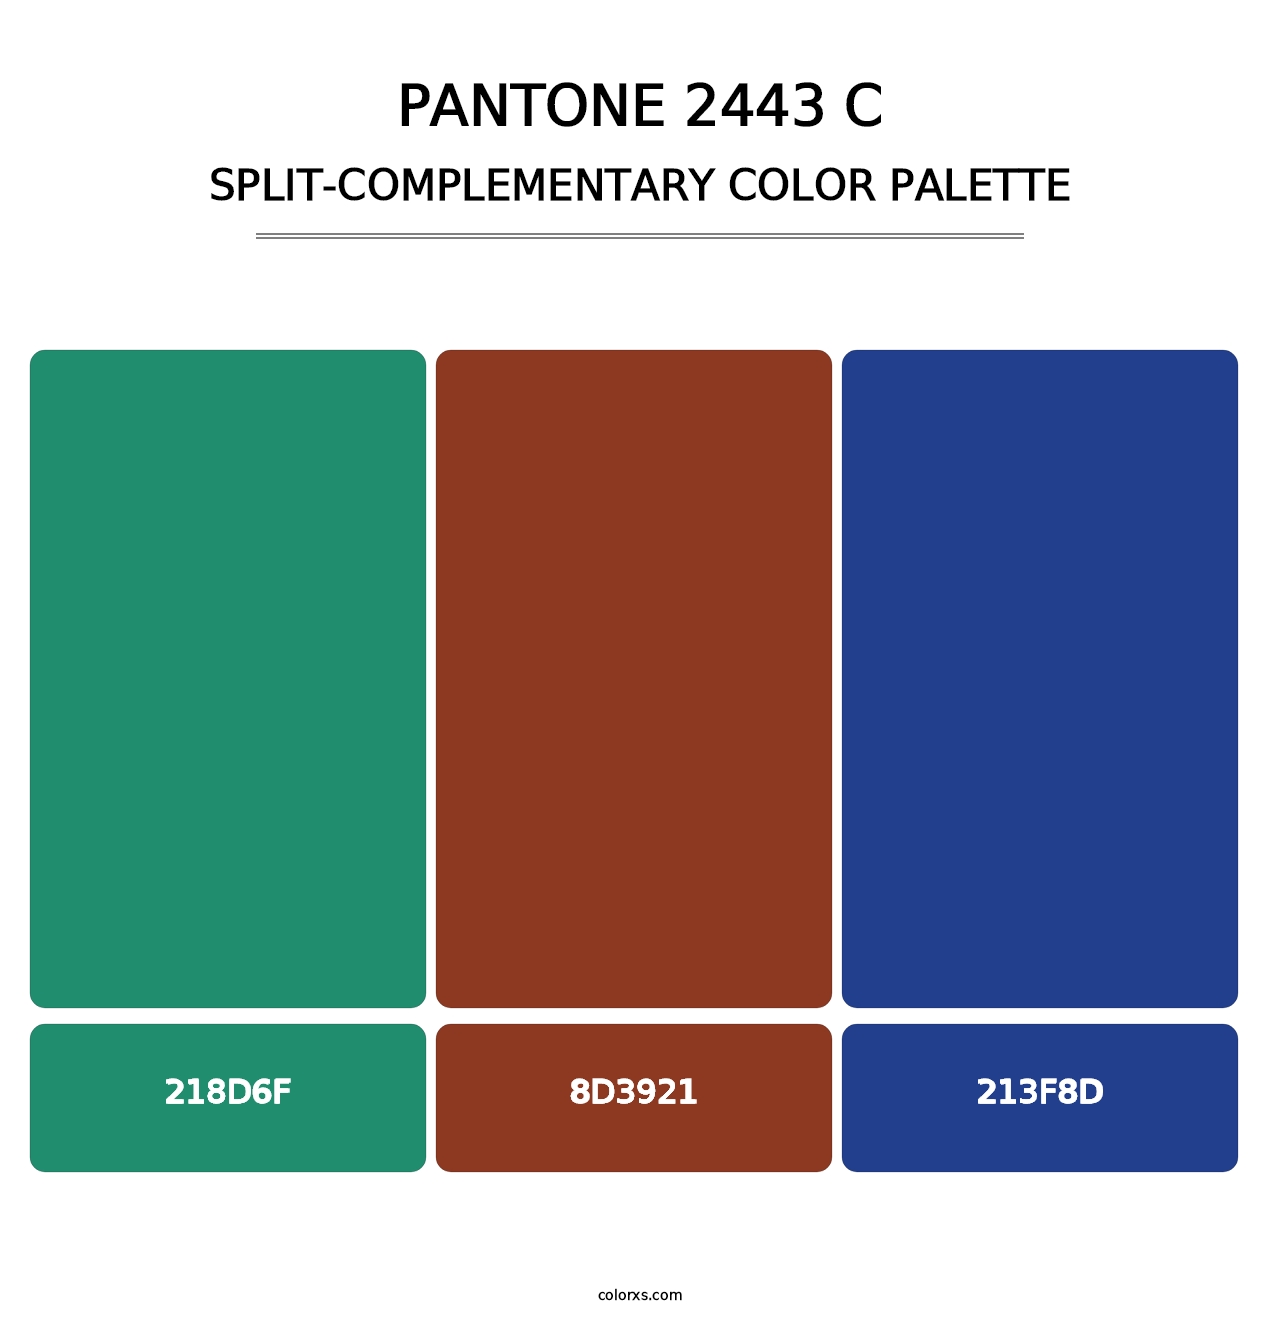 PANTONE 2443 C - Split-Complementary Color Palette